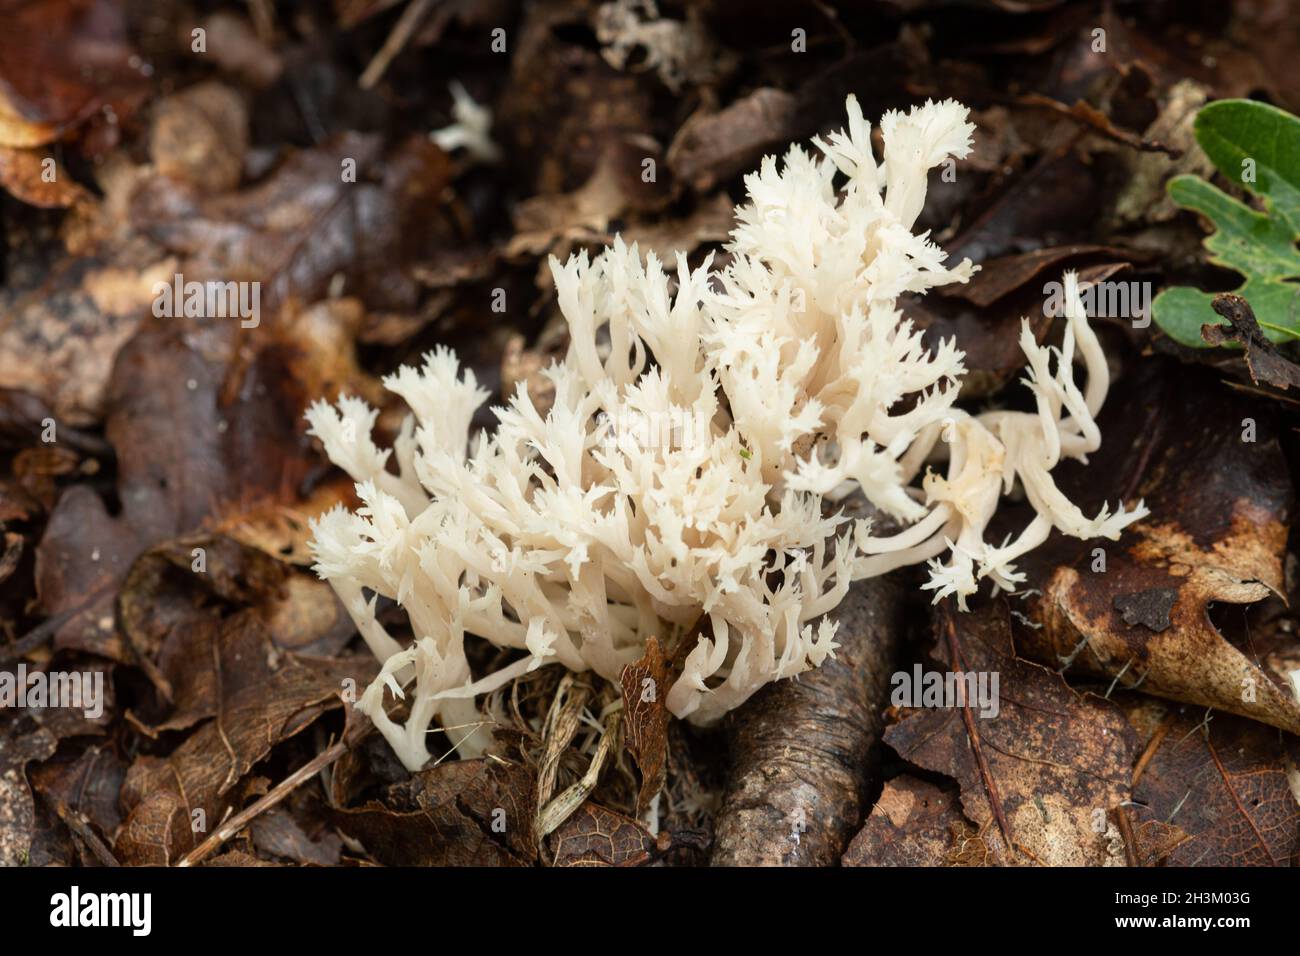 Fungo corallo crestato (coralloides Clavulina) su terreno boscoso in autunno, Regno Unito Foto Stock